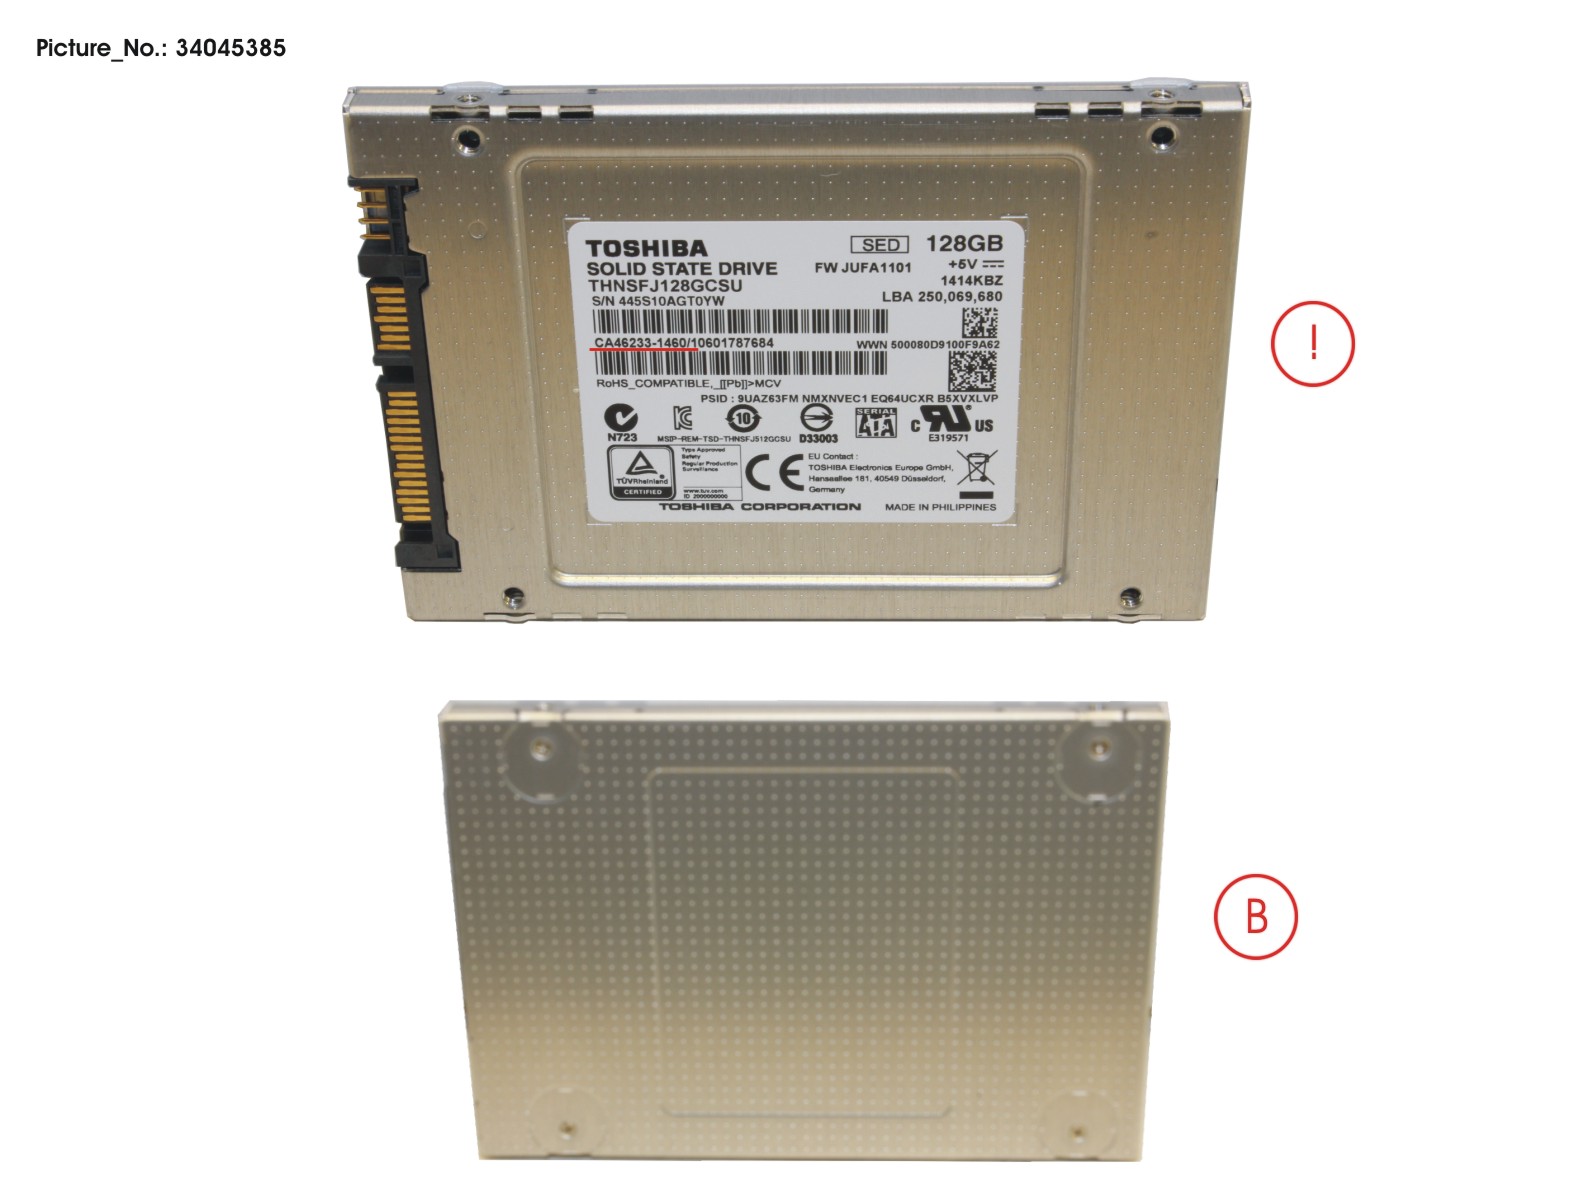 SSD S3 128GB 2.5 SATA/TOS(FDE) (7MM)